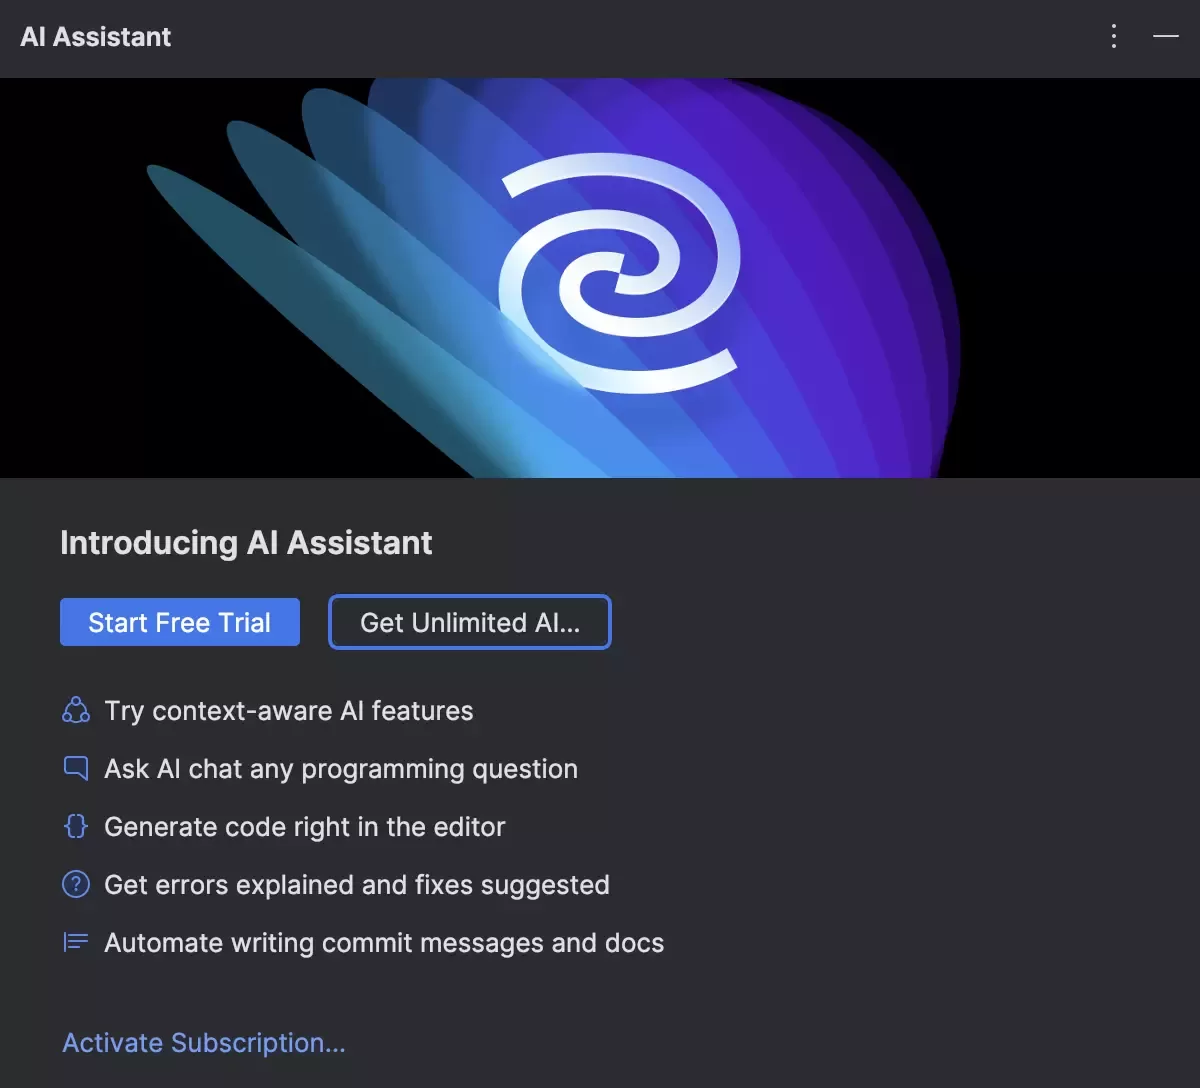 JetBrains CLion AI Assistant 预览阶段结束